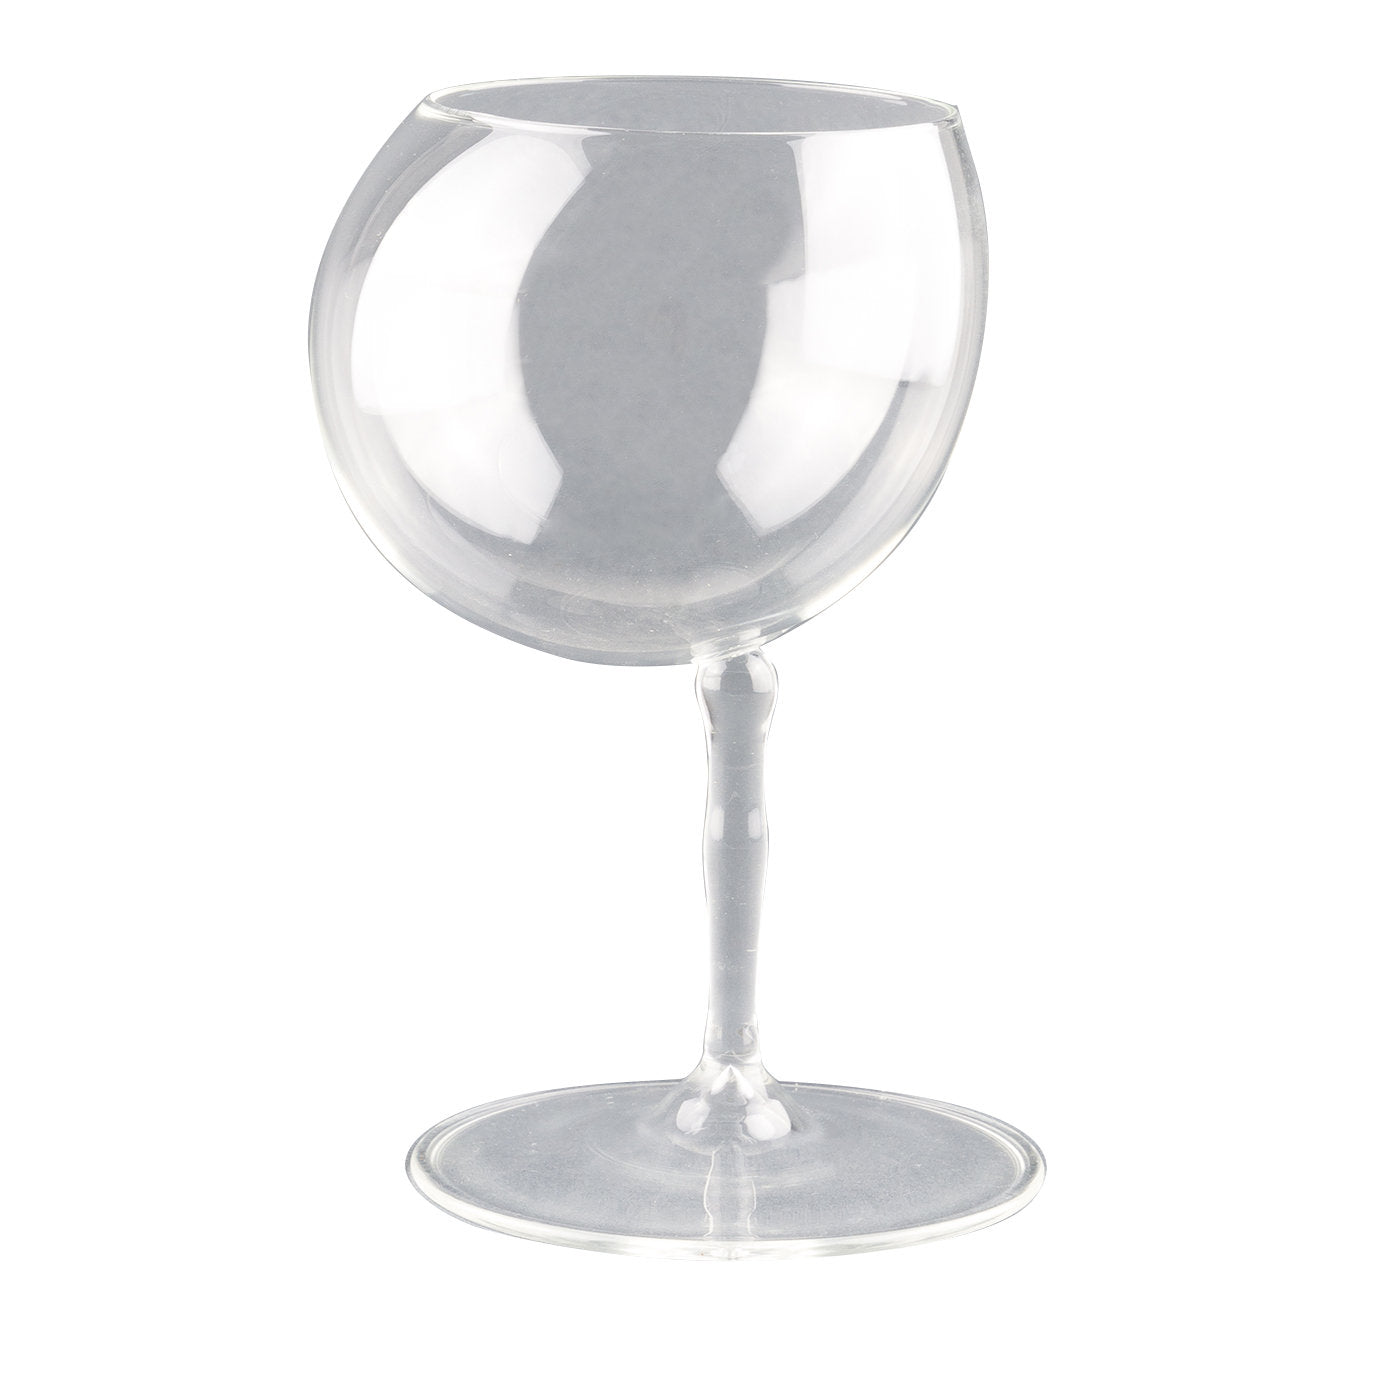 Bubble L Wine Glass - Main view